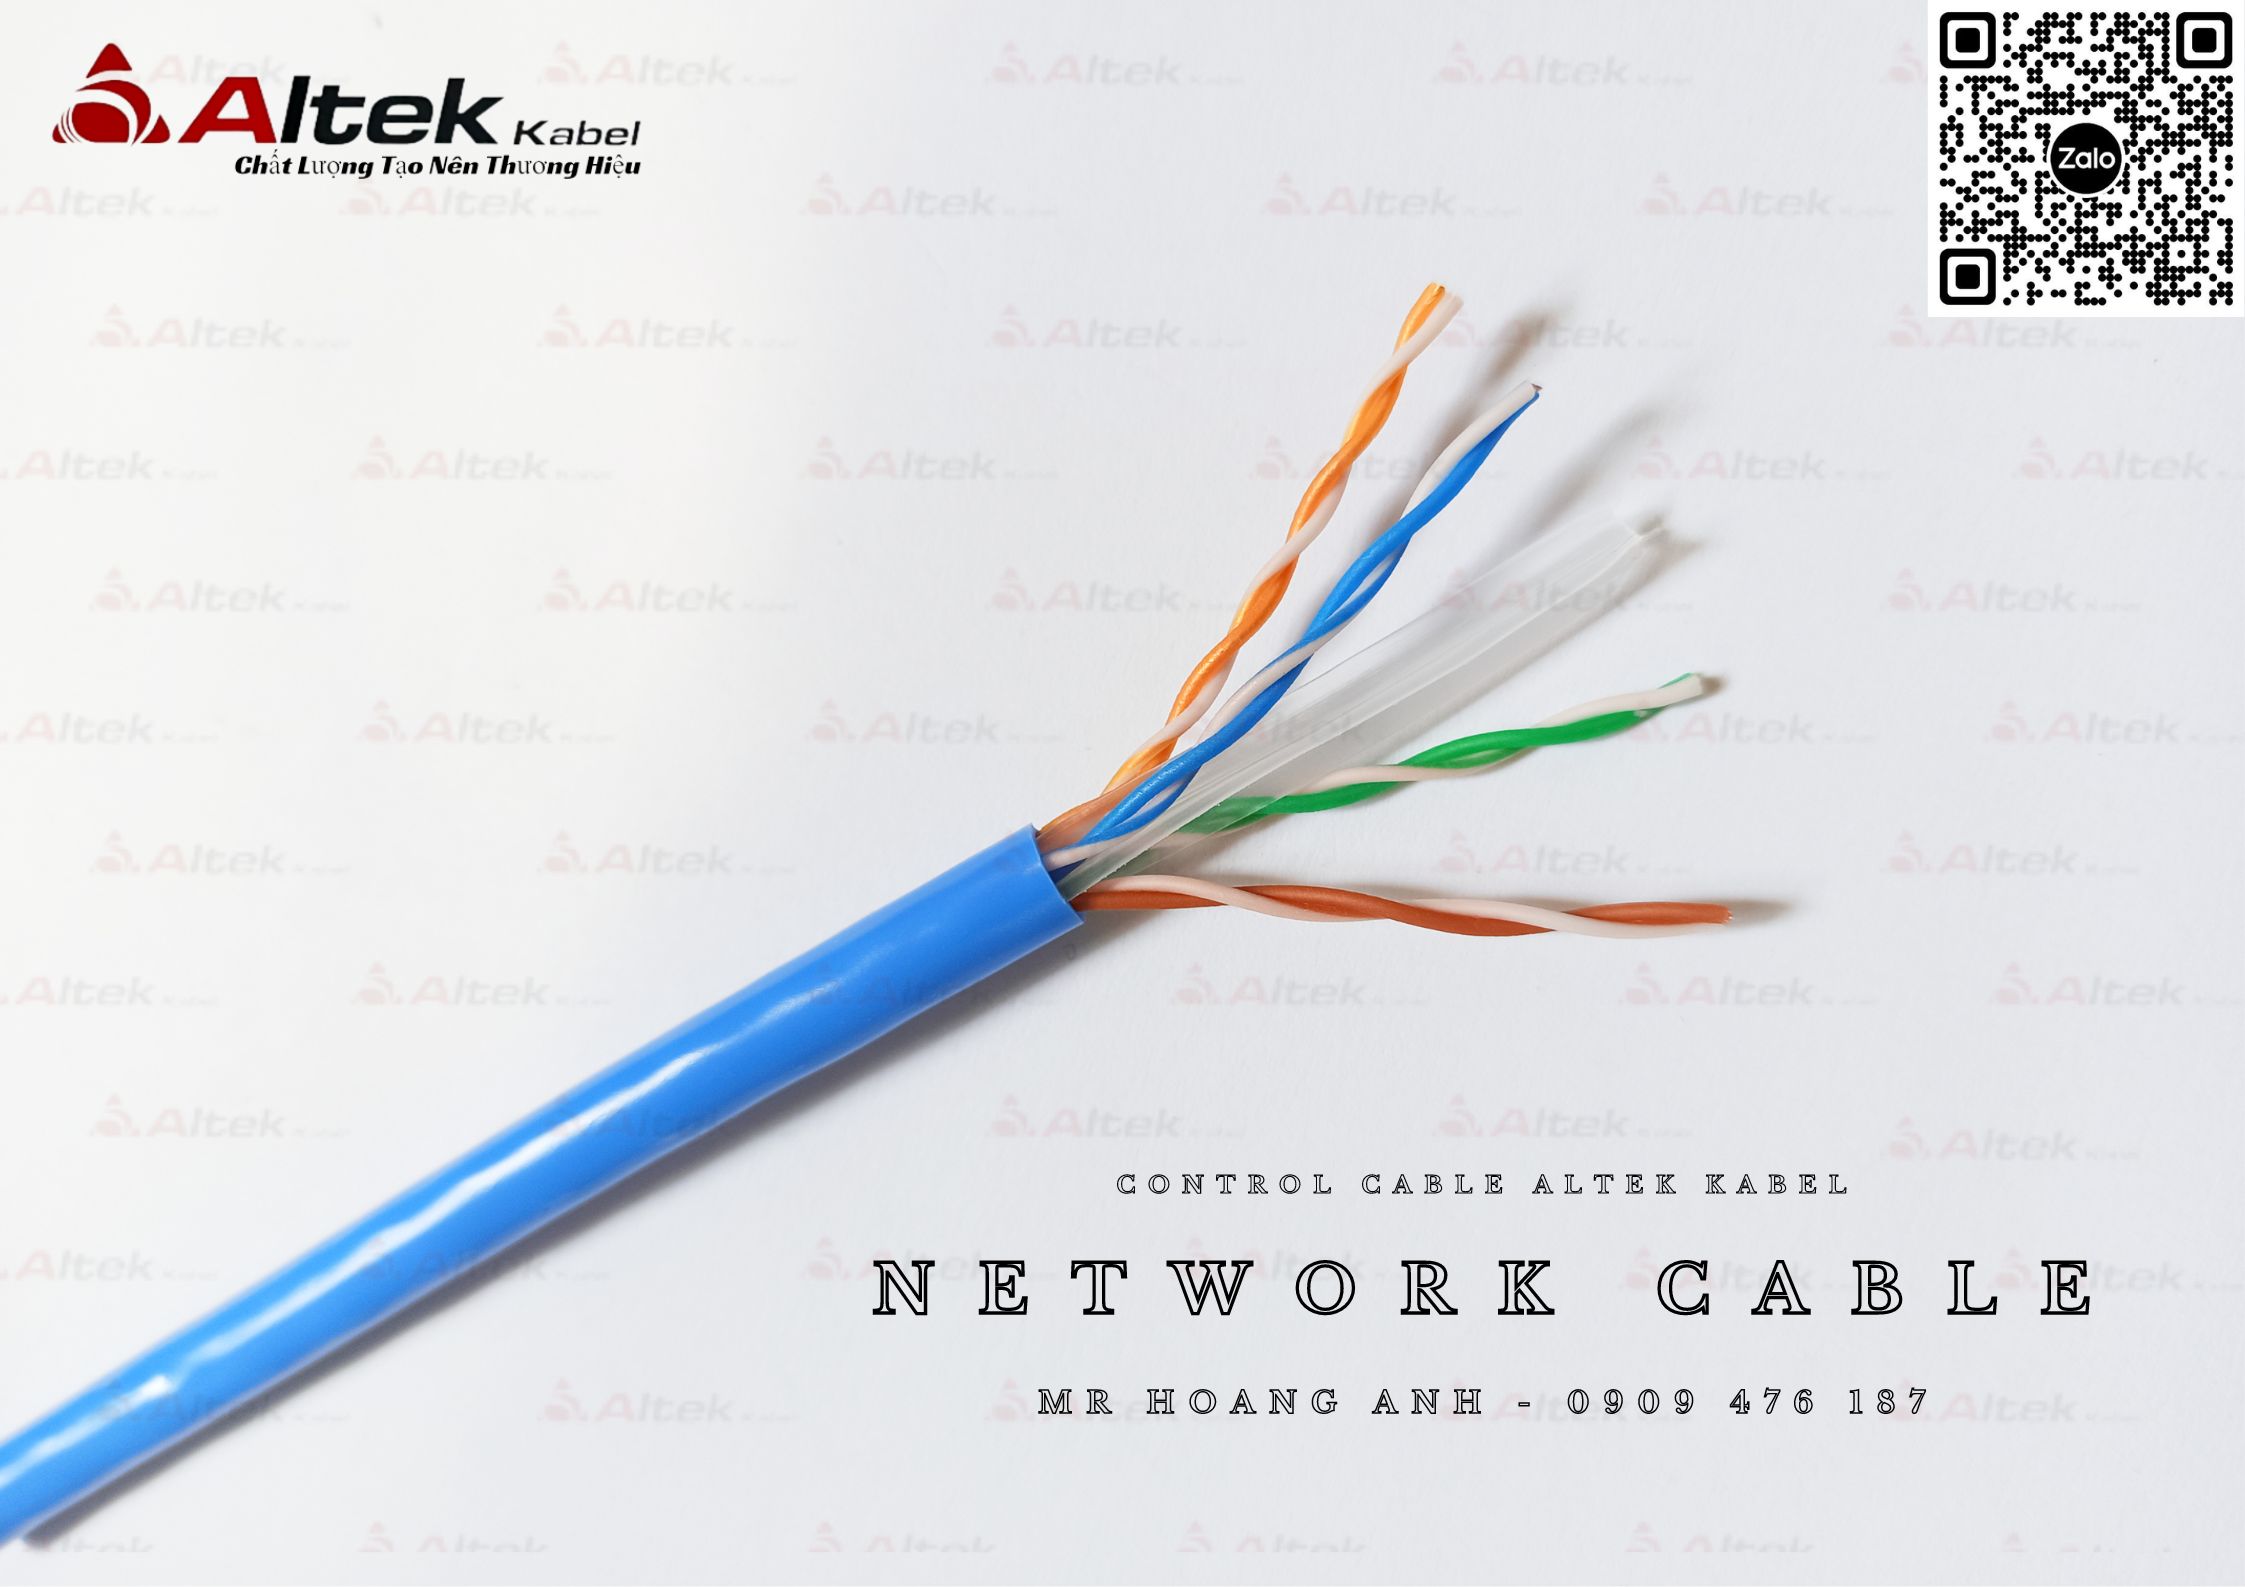 Dây cáp mạng internet cat5e, dây cáp mạng phổ biến nhất hiện nay,...